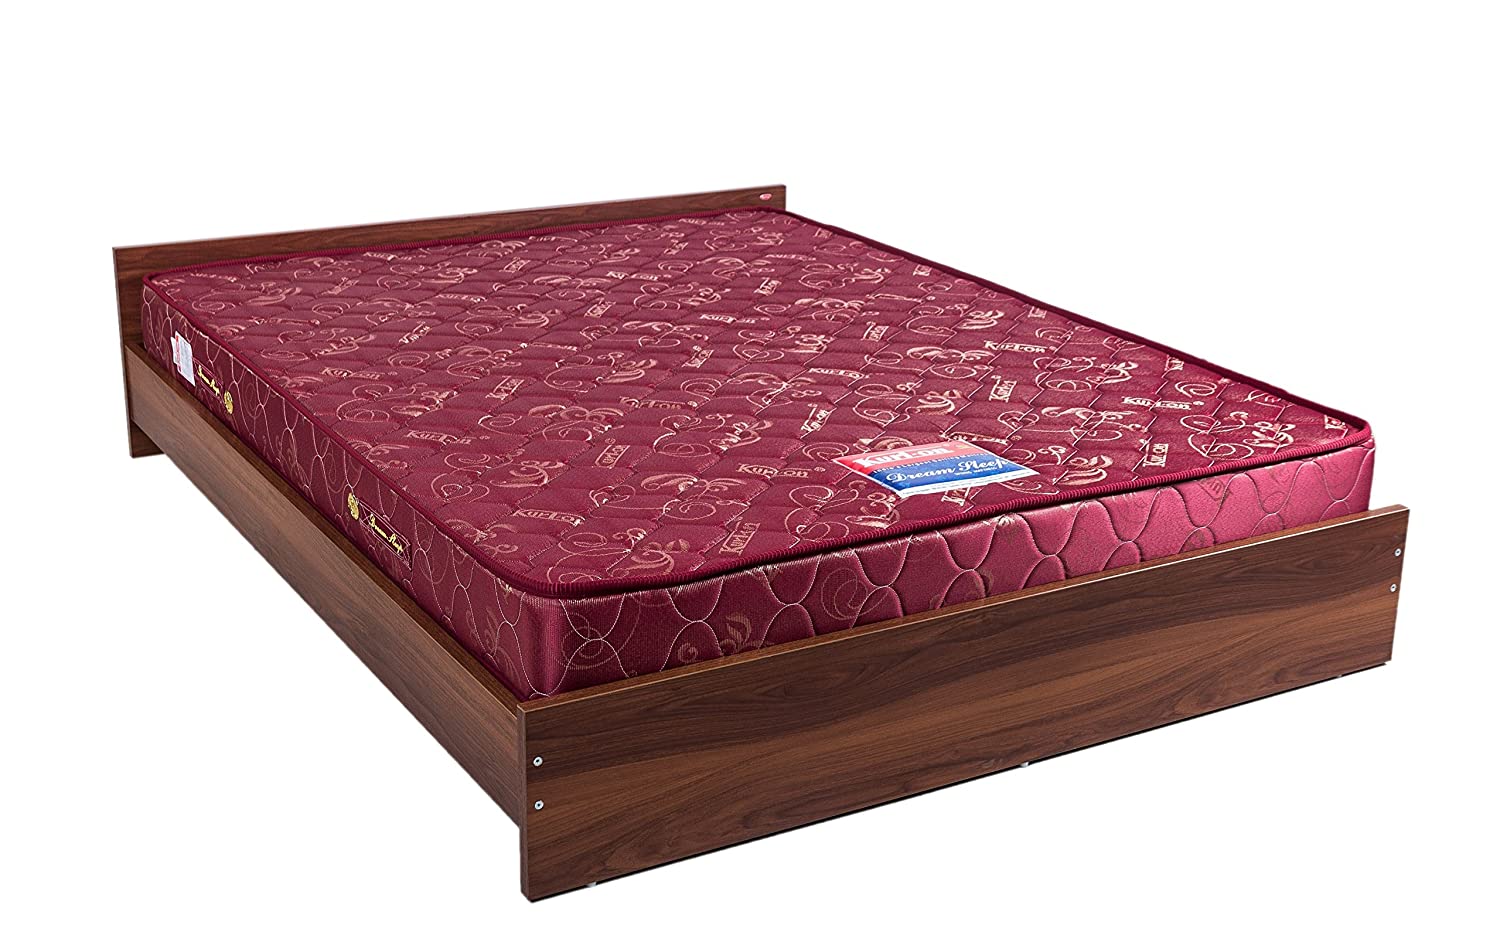 using a futon mattress on a regular bed